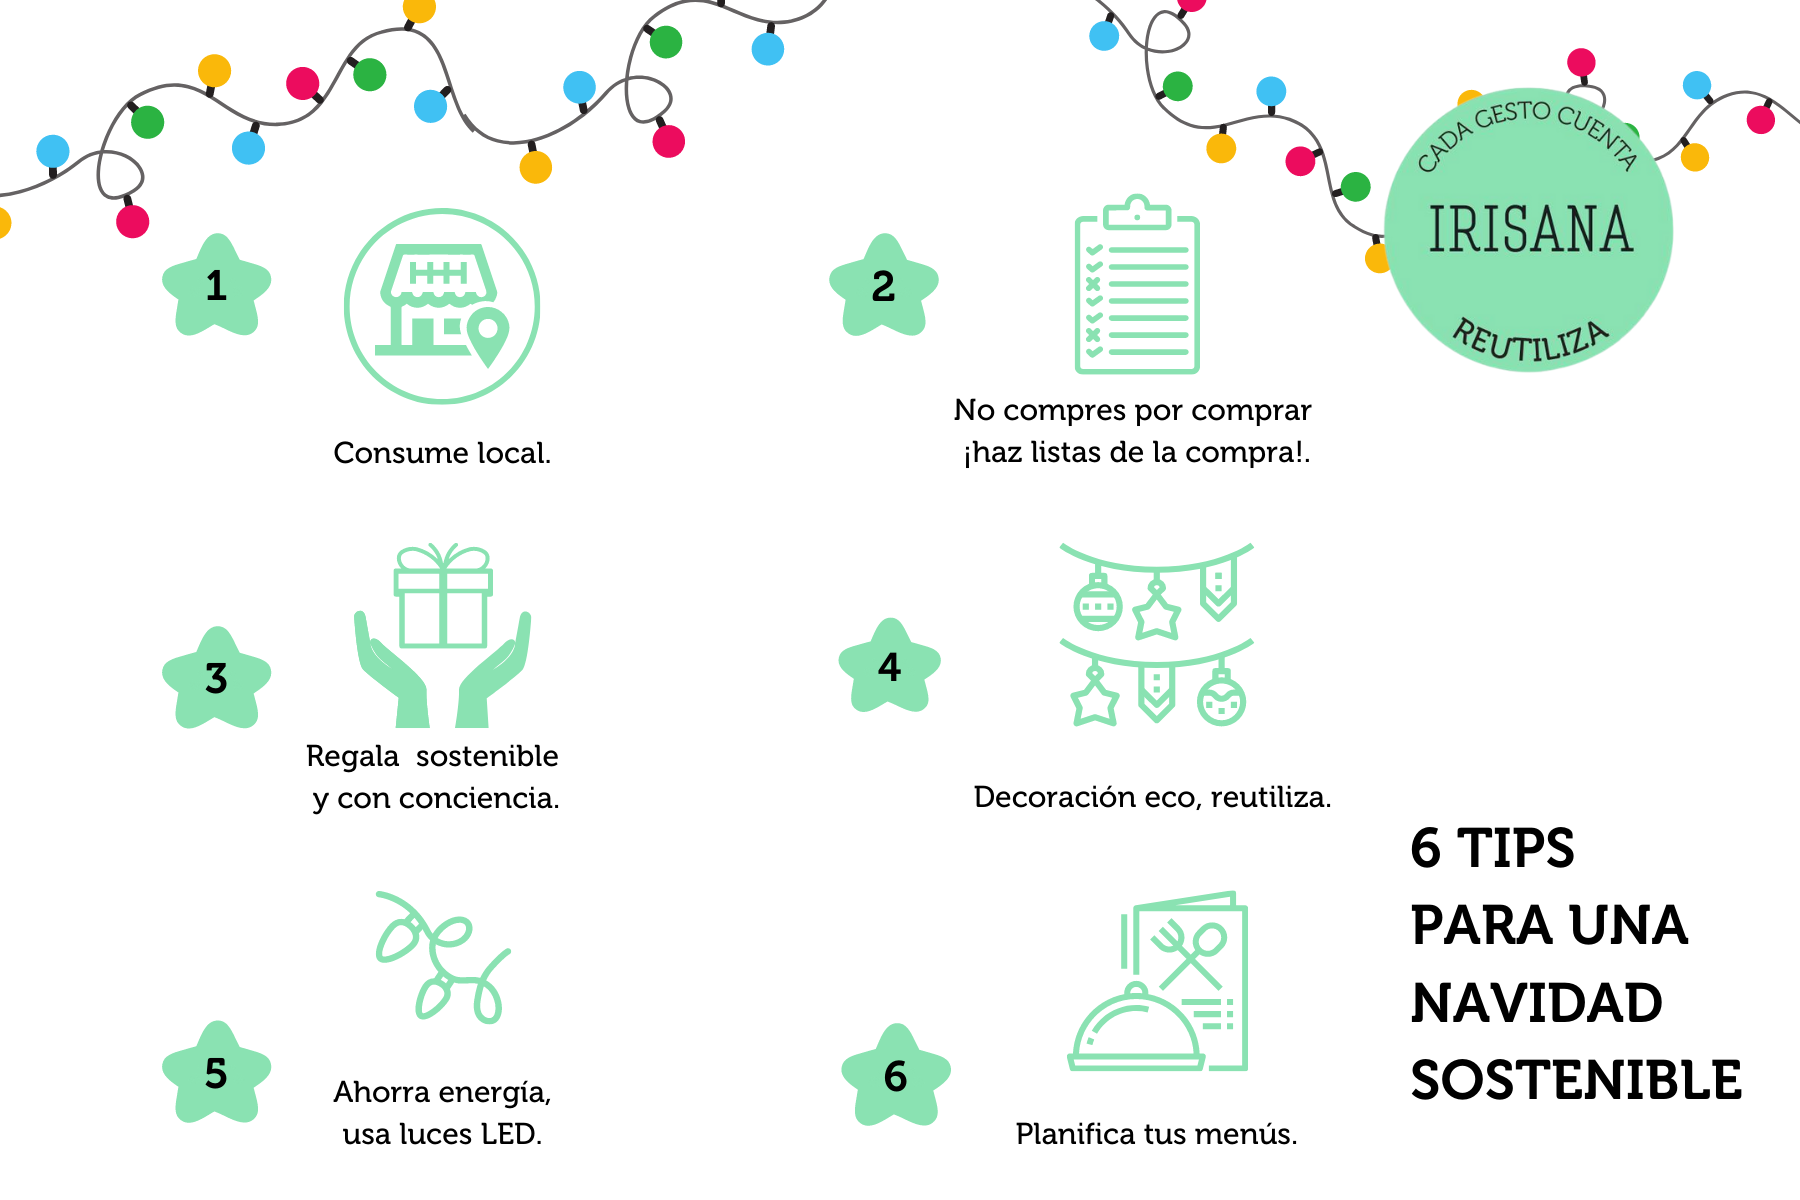 Consejos para una navidad sostenible by Grupo Irisana